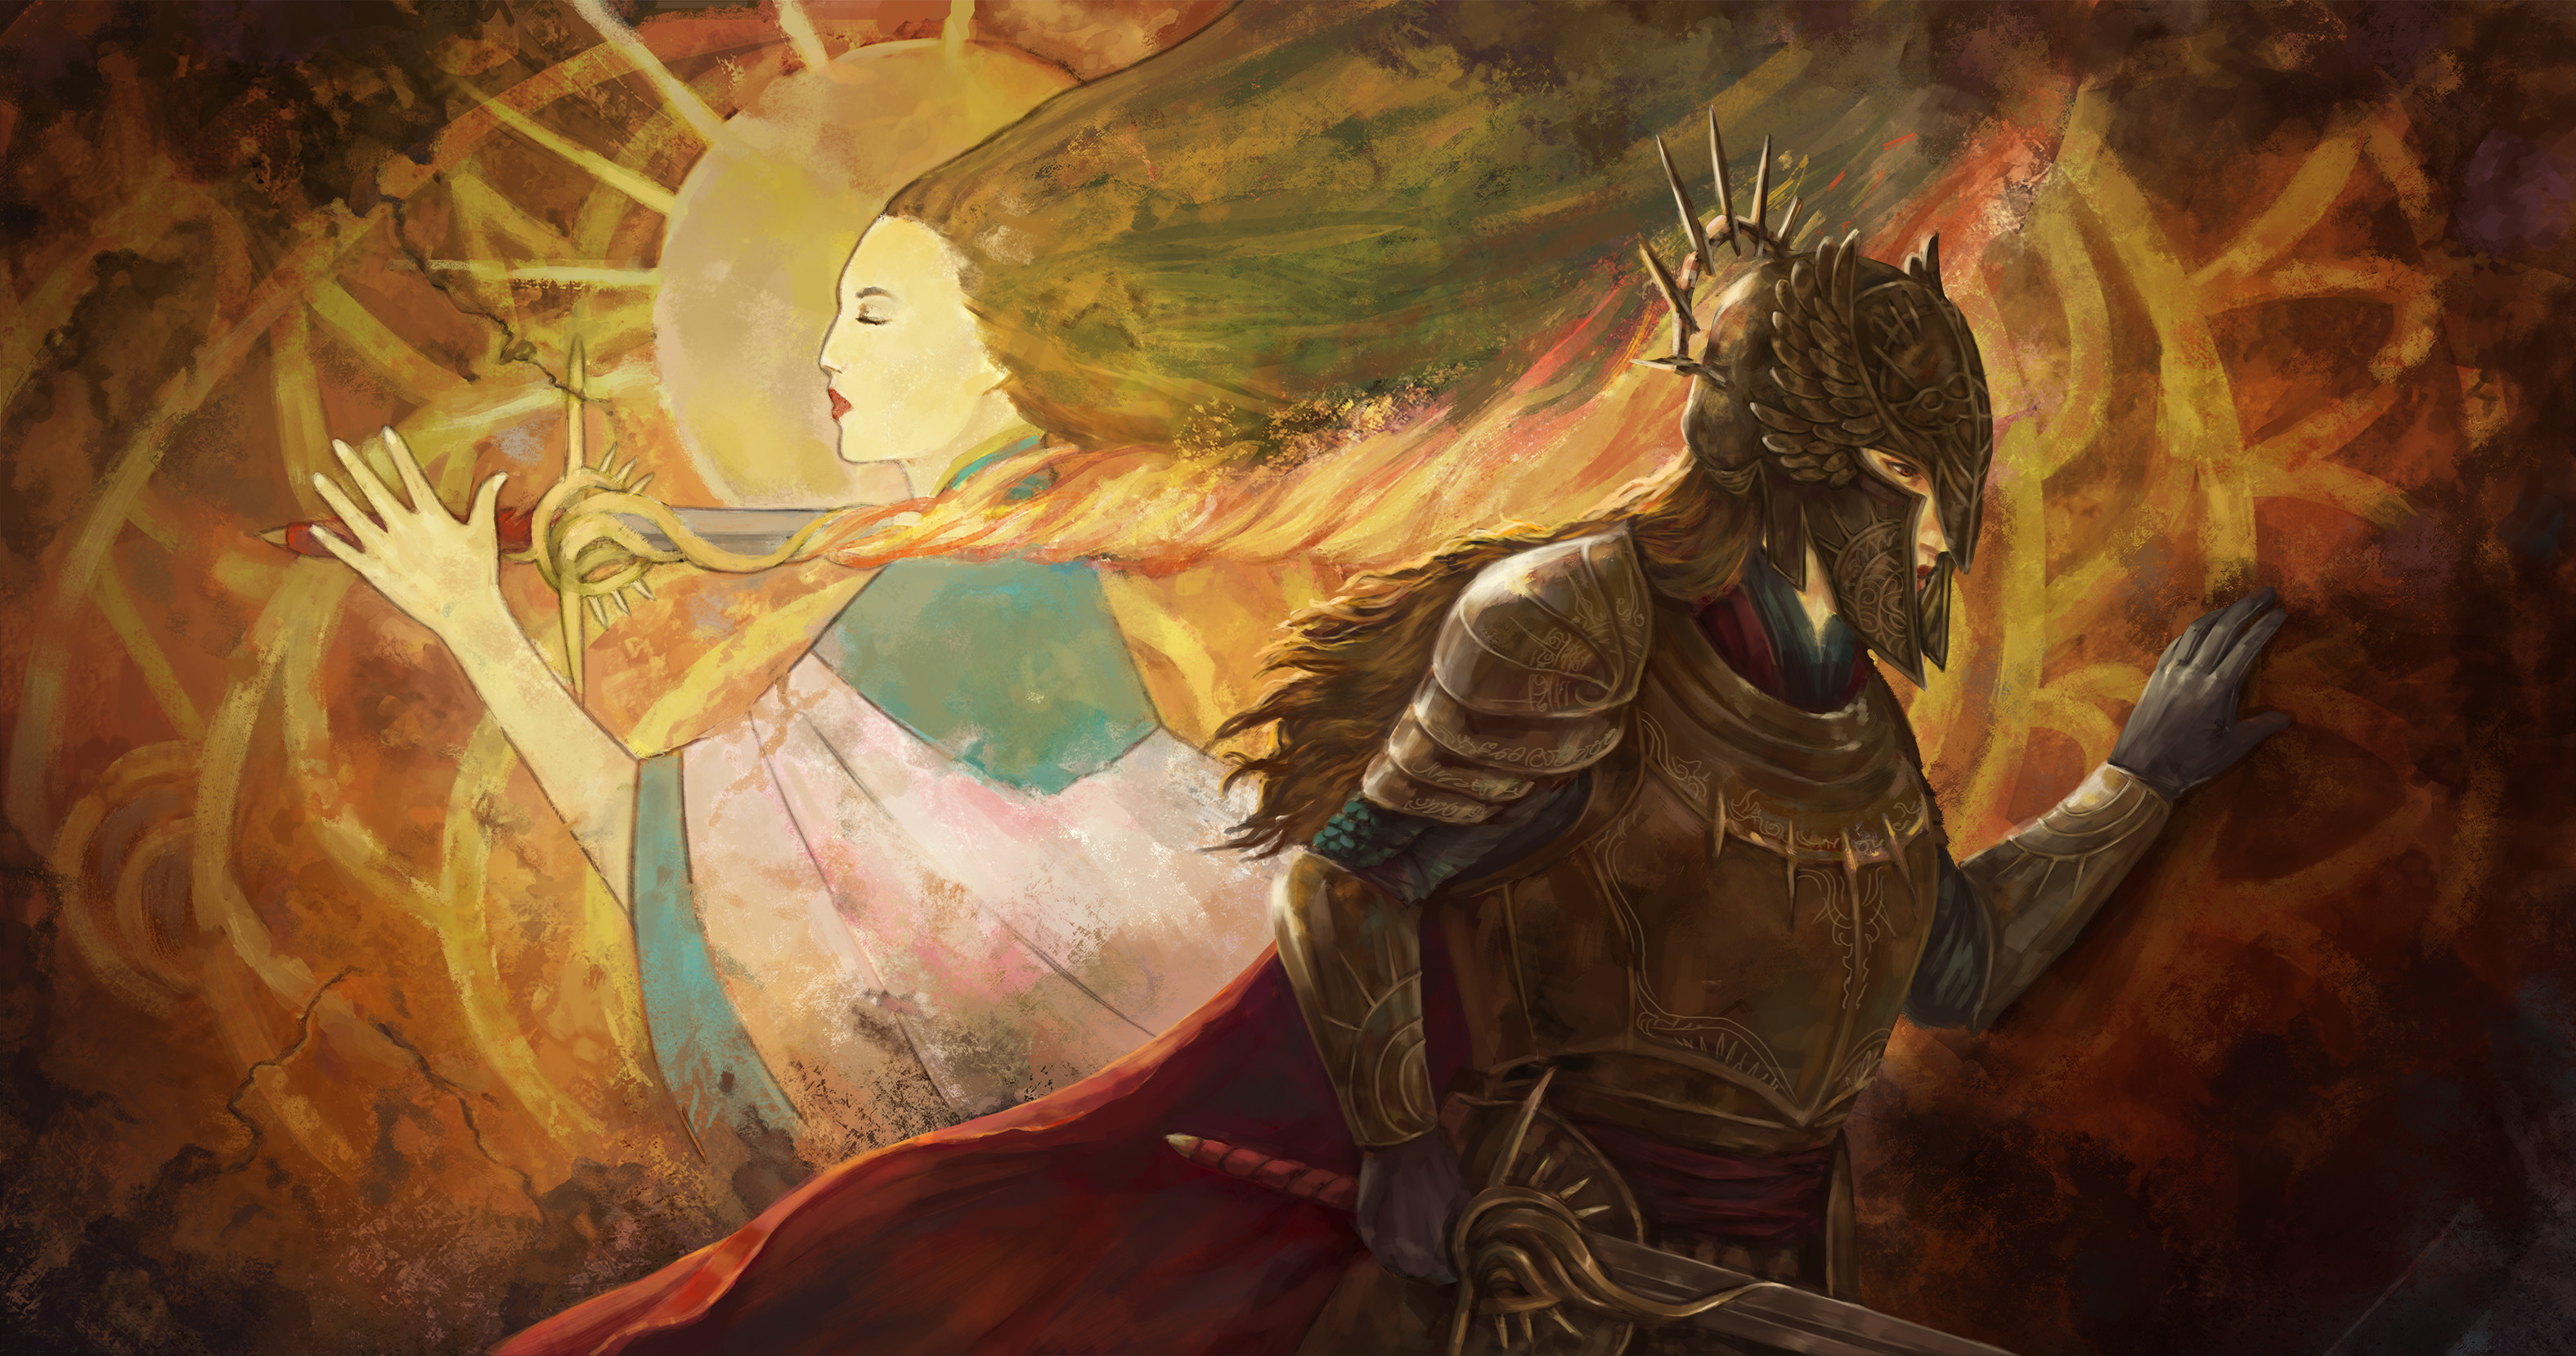 Veronica ONeill Digital Art Fantasy Art Sword Knight Flaming Sword Sun 3150x1658